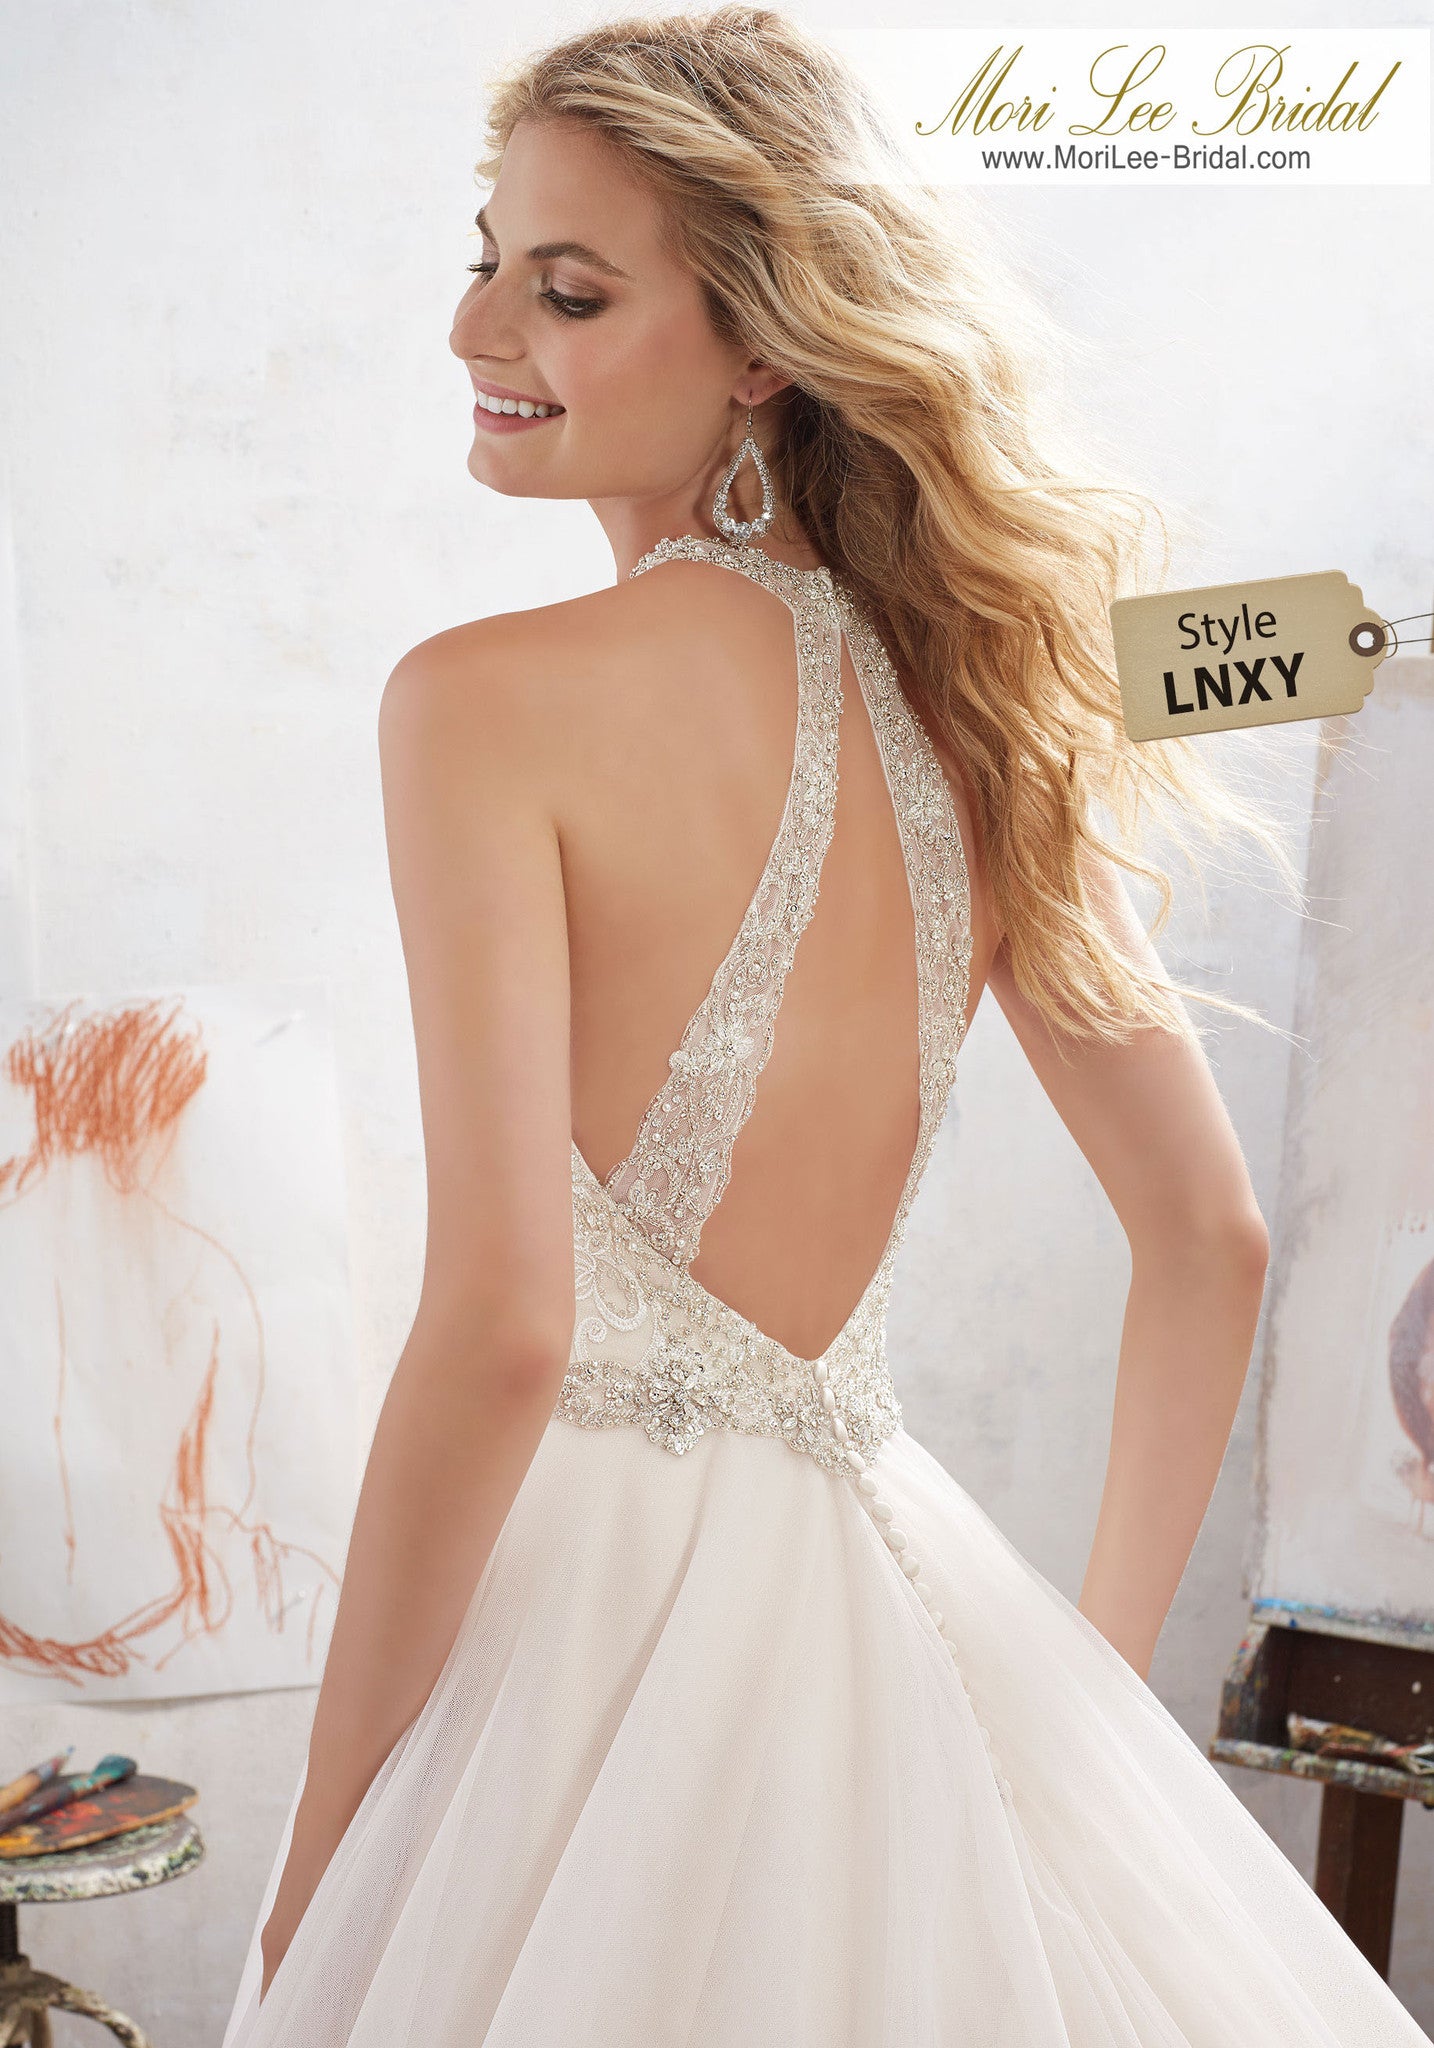 Este romántico vestido de novia con escote en pico presenta un corpiño bordado con aplicaciones con cuentas de cristal y una falda de tul. LNXY*